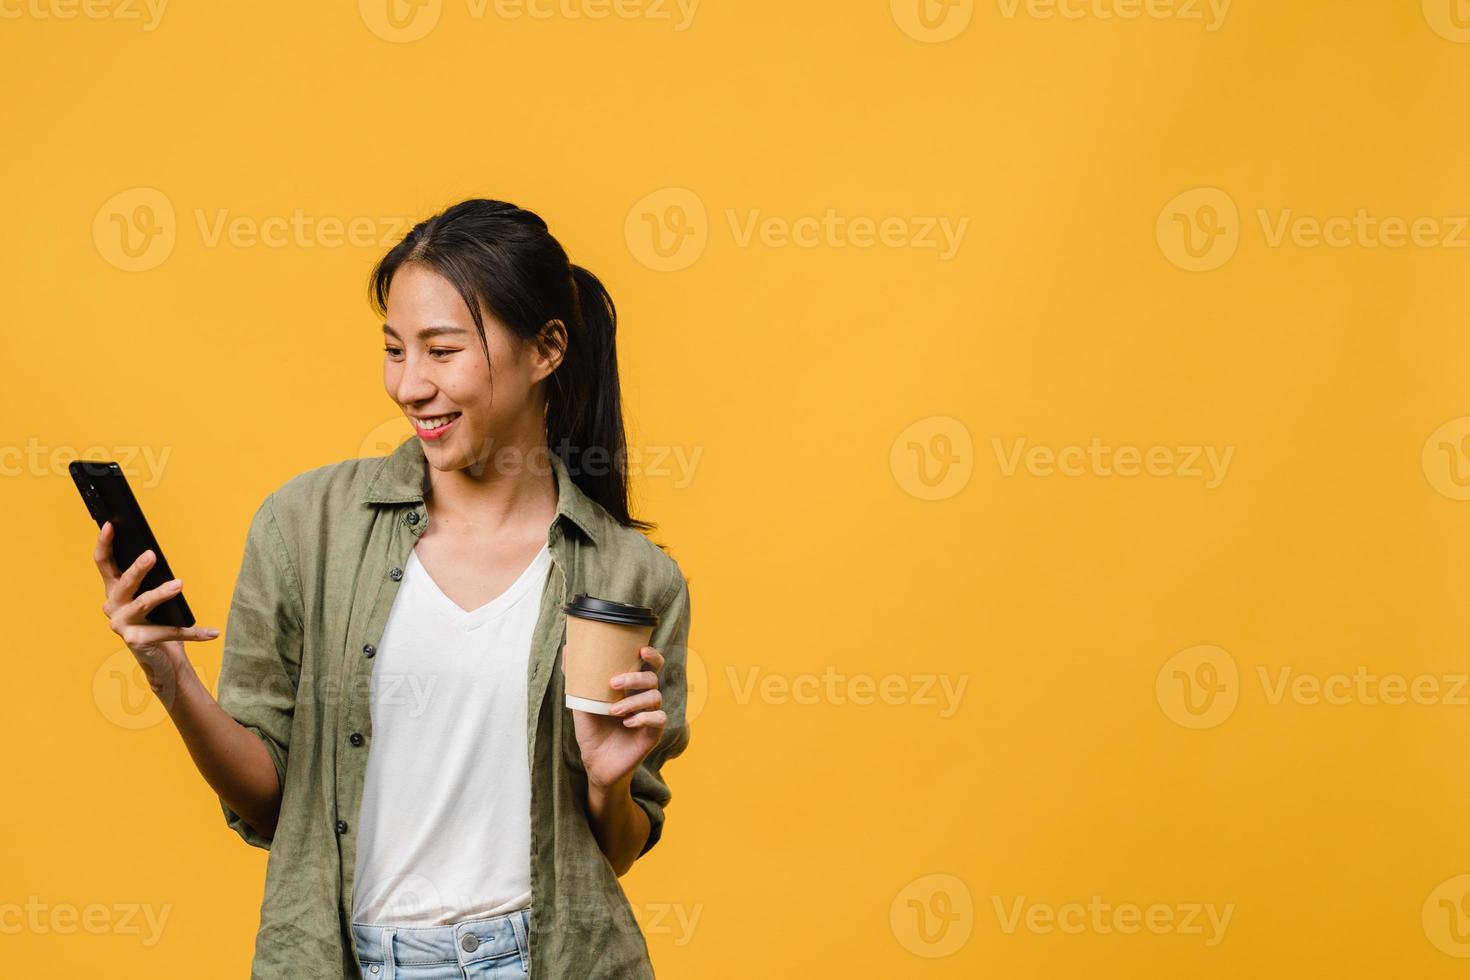 jeune femme asiatique utilisant un téléphone et tenant une tasse de café avec une expression positive, sourit largement, vêtue d'un tissu décontracté, se sentant heureuse et se tenant isolée sur fond jaune. concept d'expression faciale. photo